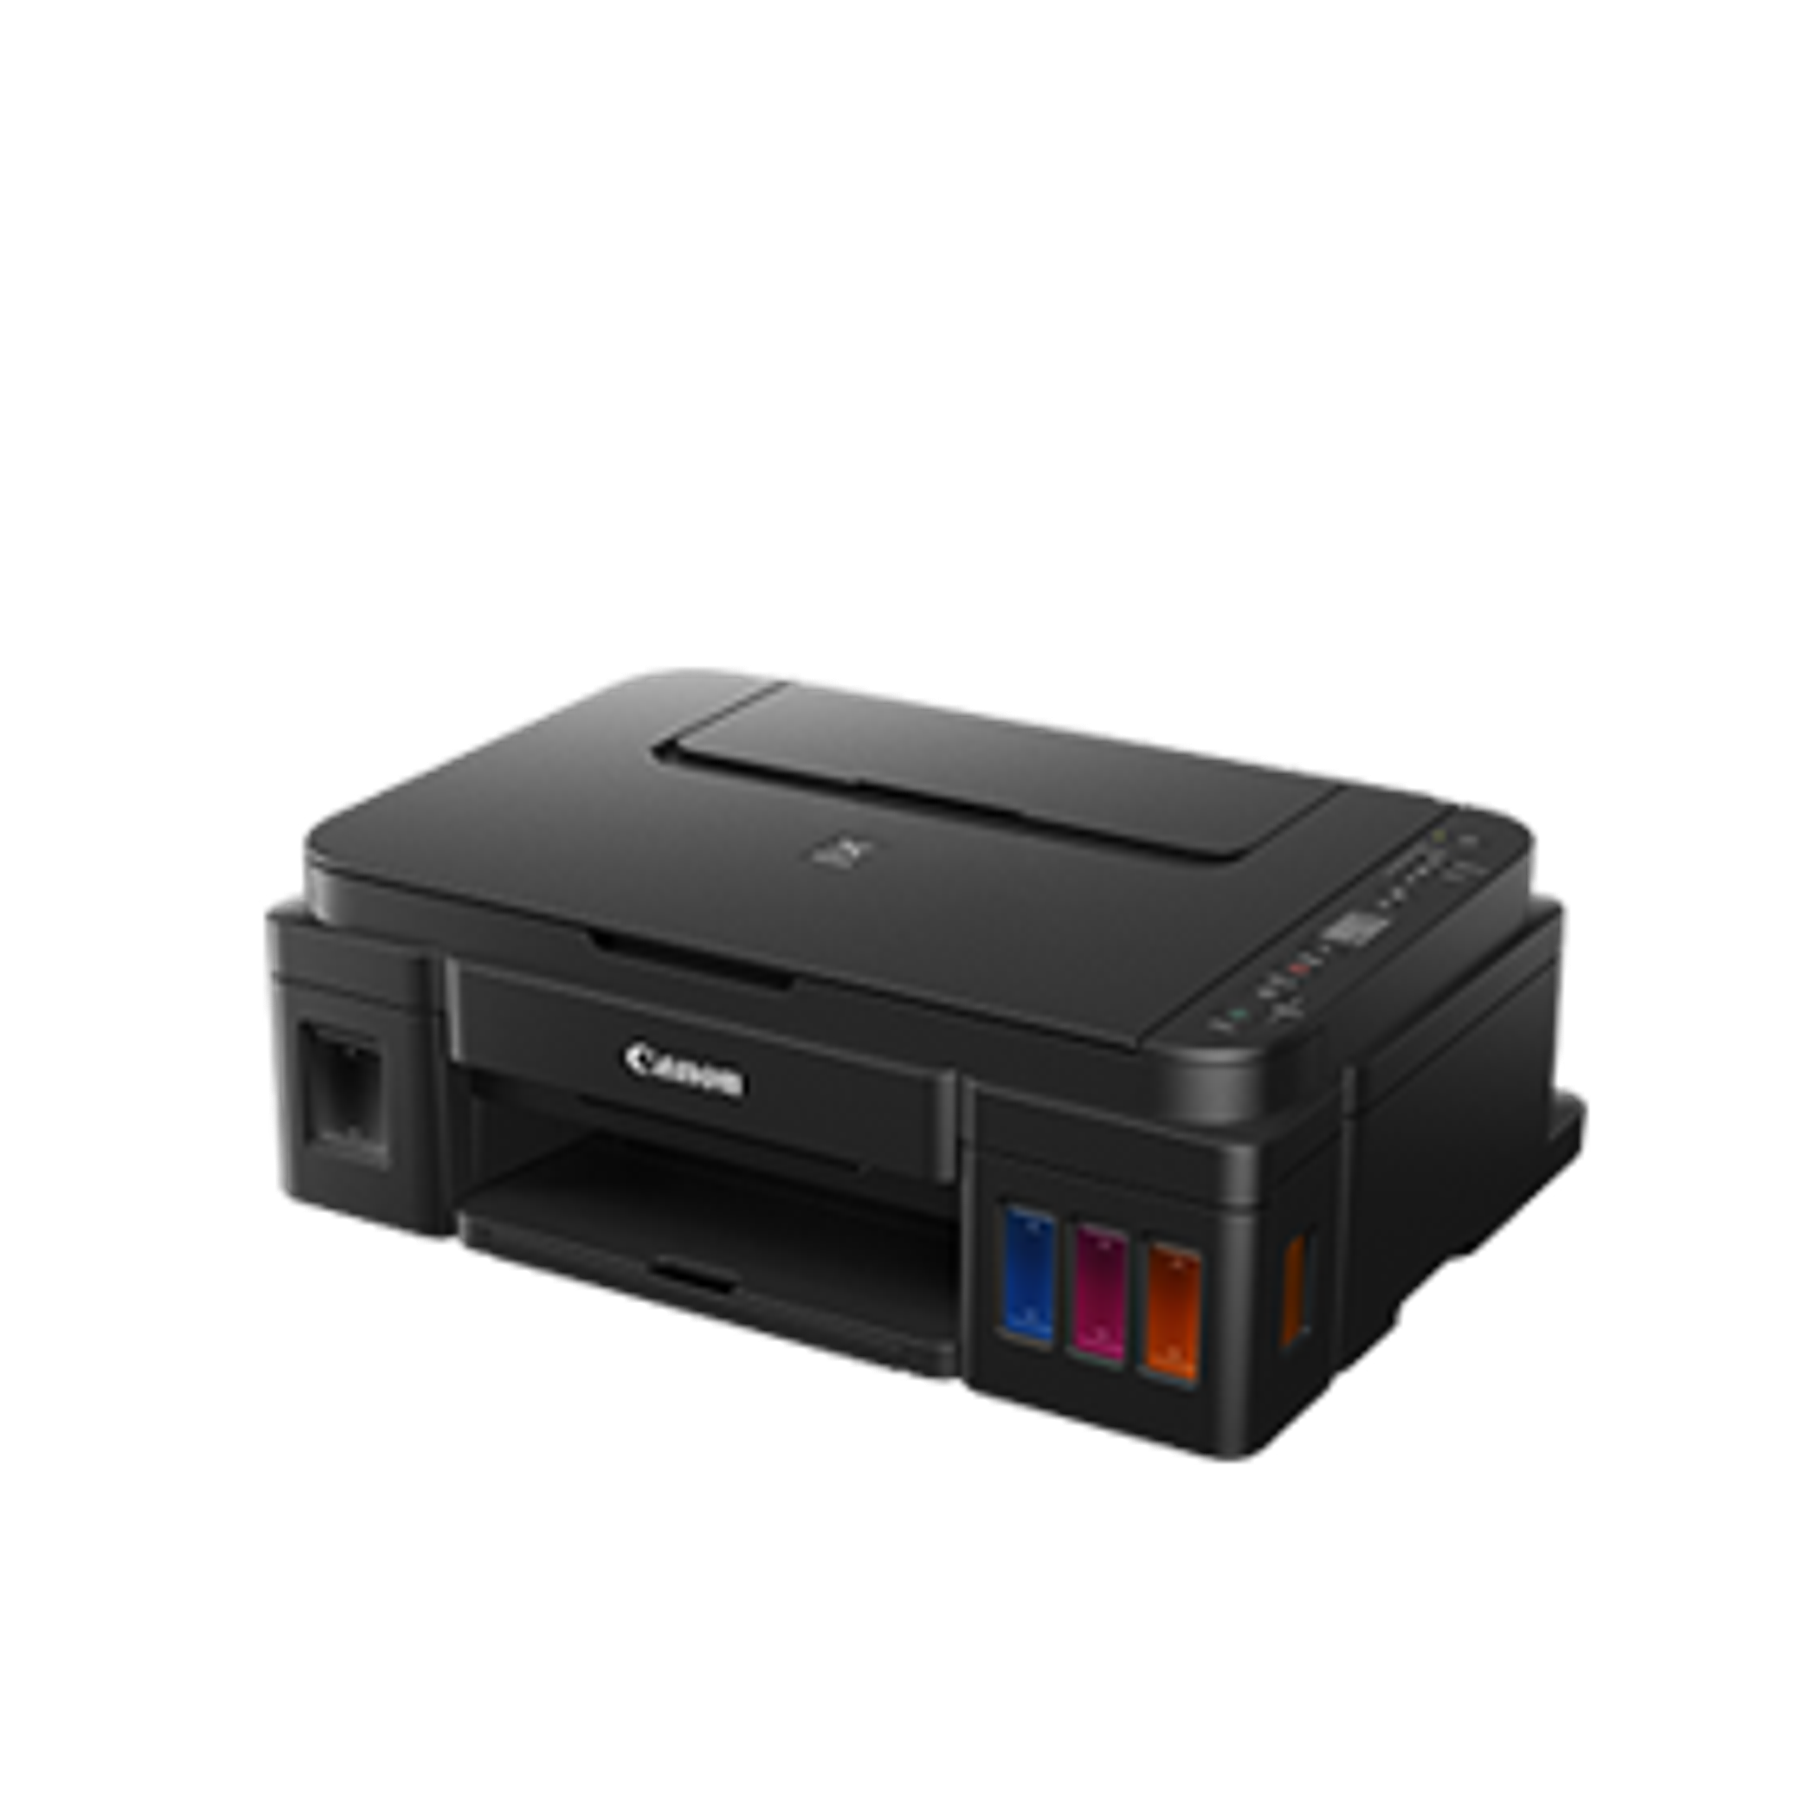 Impresora con WIFI CANON / Escáner y Copiadora / Hasta 13700 Páginas por Recarga